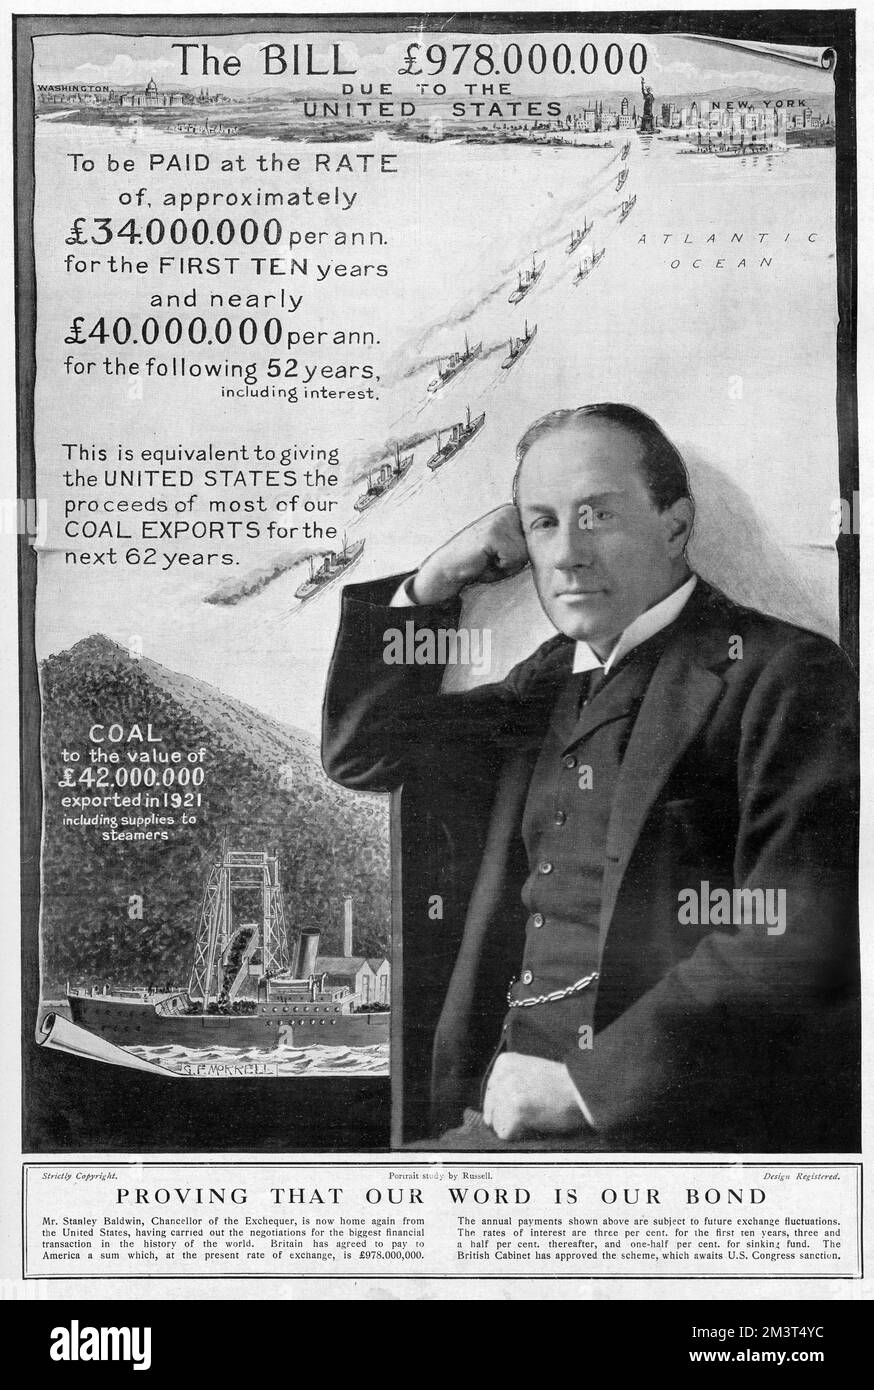 Veranschaulichung des Deals Stanley Baldwin als Schatzkanzler stimmte mit den Vereinigten Staaten überein, nach dem Ersten Weltkrieg Kriegsschulden zu zahlen. Beweist, dass unser Wort unsere Anleihe ist: Großbritannien hat sich bereit erklärt, Amerika einen Betrag von 978.000.000 Pfund zu zahlen, der in den ersten zehn Jahren zu einem Zinssatz von £34.000.000 Pfund pro Jahr und in den folgenden 52 Jahren zu £40.000.000 Pfund pro Jahr einschließlich Zinsen zu zahlen ist. Dies entspricht der Bereitstellung der Erlöse aus dem Großteil der britischen Kohleexporte in den nächsten 62 Jahren an die USA. Das britische Kabinett hat den Plan gebilligt, der auf die Sanktion des US-Kongresses wartet. Stockfoto